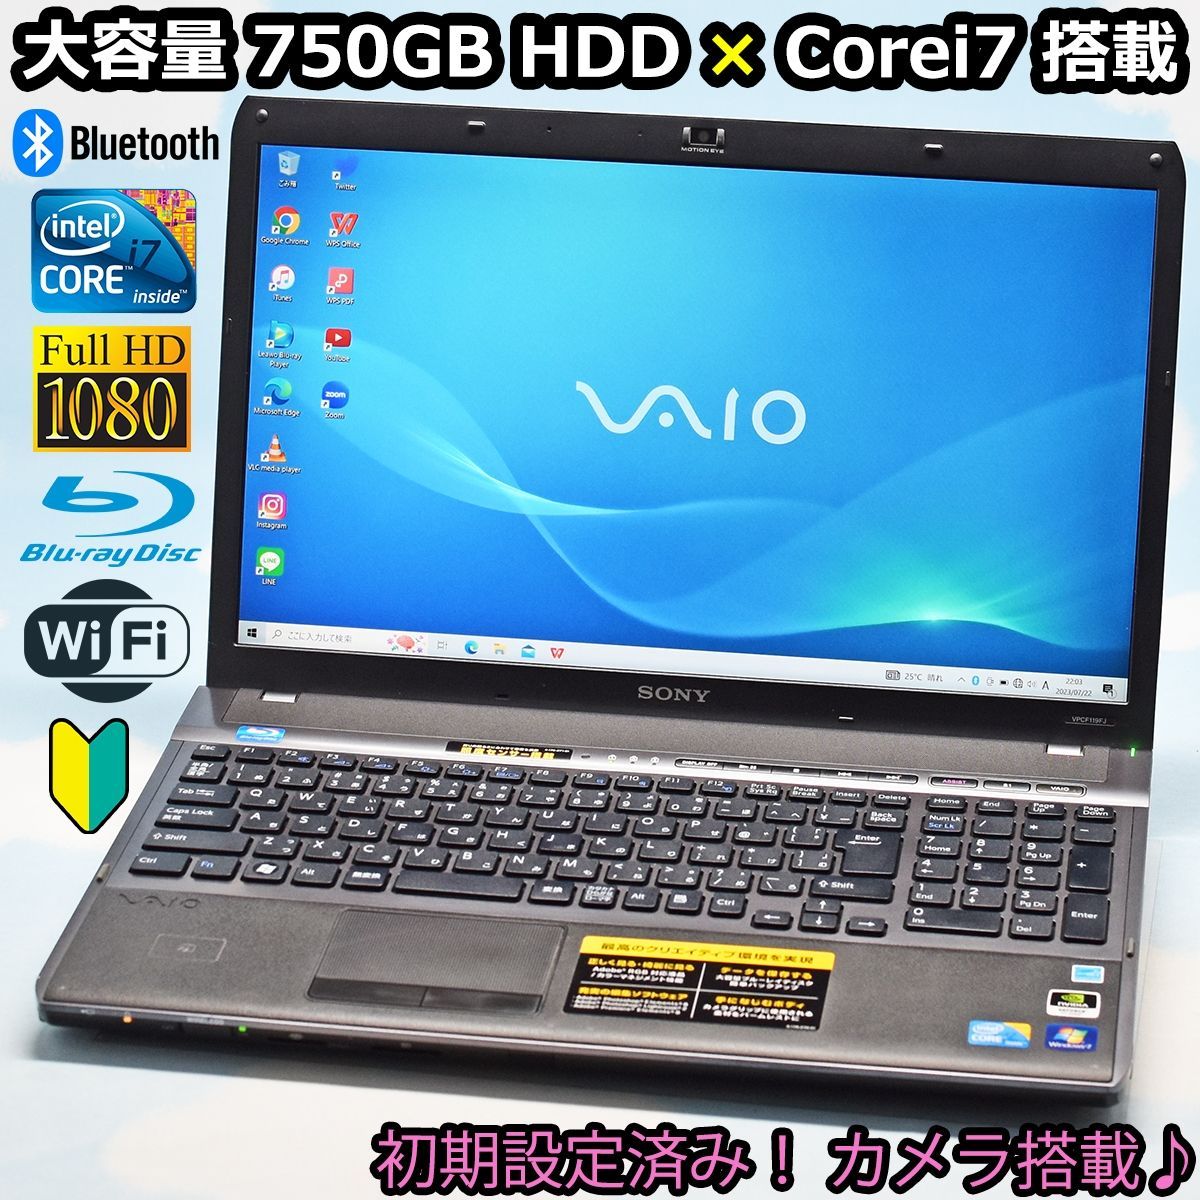 人気のVAIO Corei7、Bluetooth、フルHD、大容量 750GB HDD、カメラ